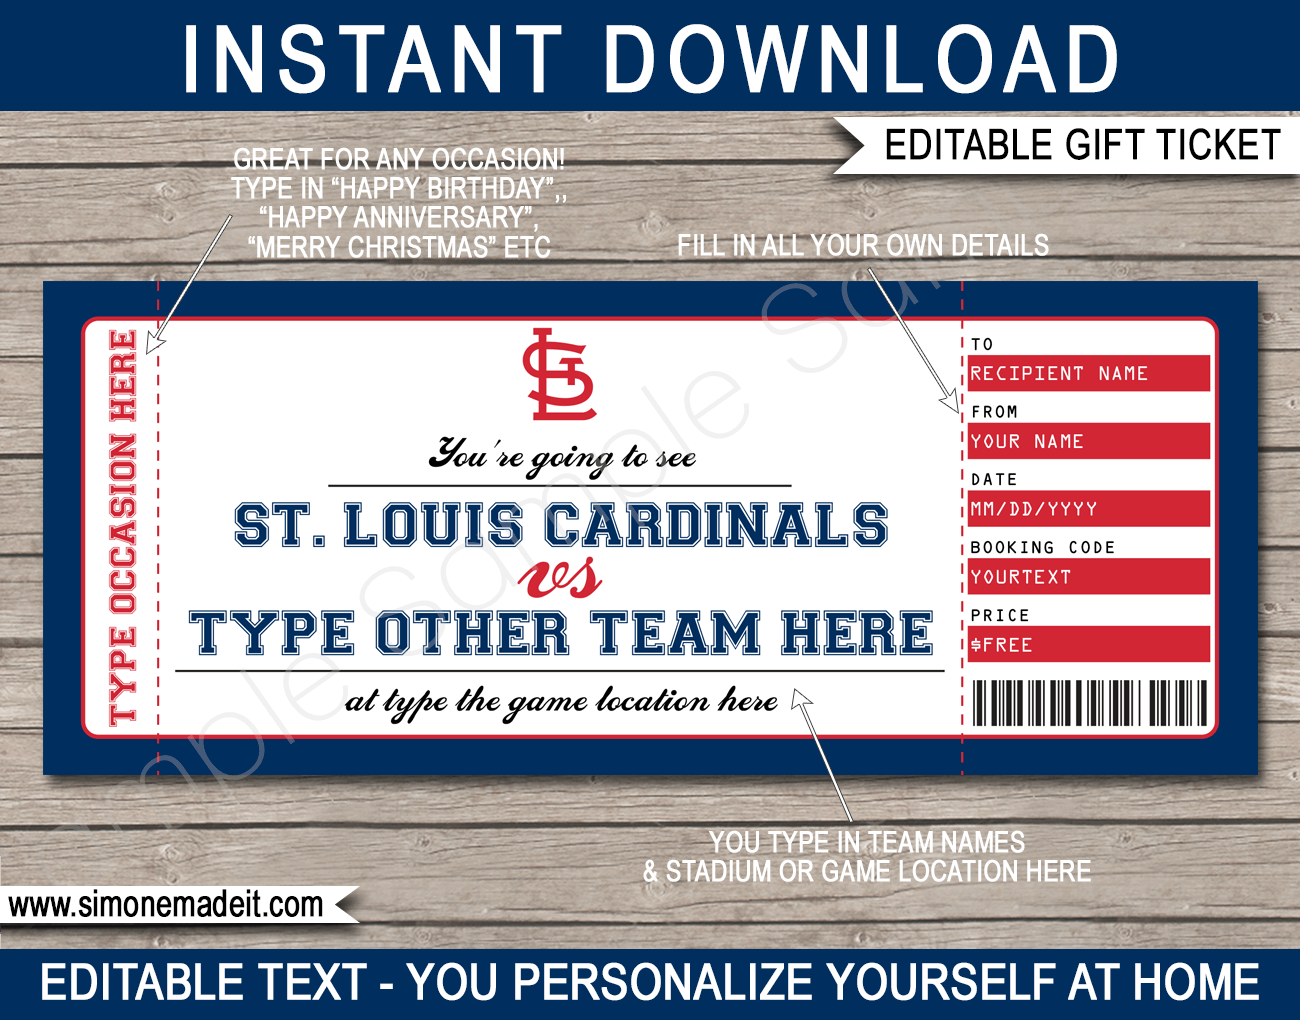 St. Louis Cardinals THEMED Keepsake Event Ticket 